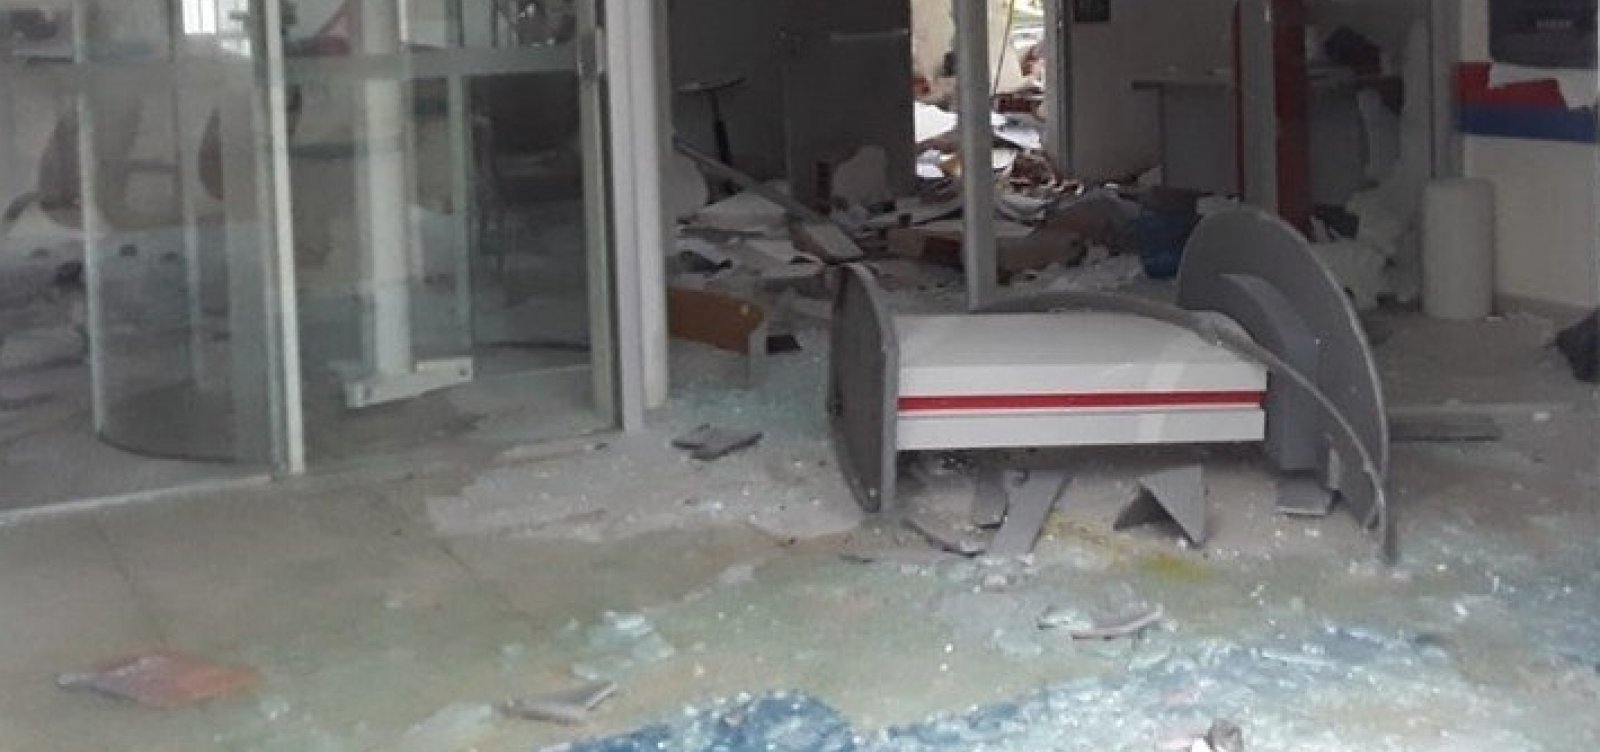 Agência bancária no sul da Bahia é explodida; ataque é 24º no estado